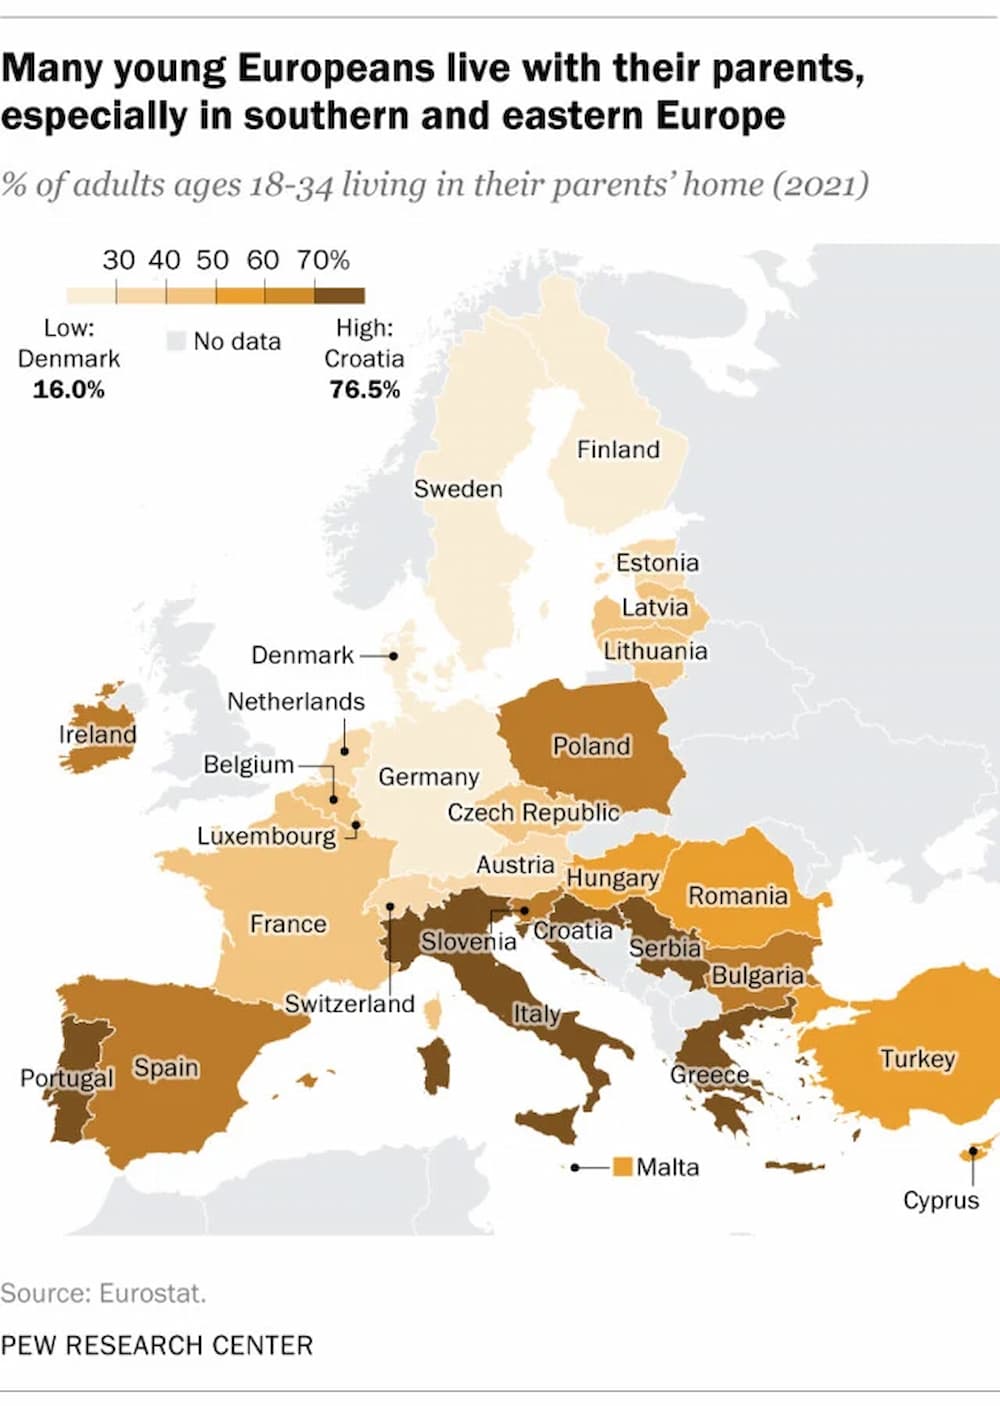 Patriko ilikies 7 5 23 - Έρευνα: Επτά στους 10 νέους μένουν στο πατρικό τους στην Ελλάδα - Τι συμβαίνει στην Ευρώπη